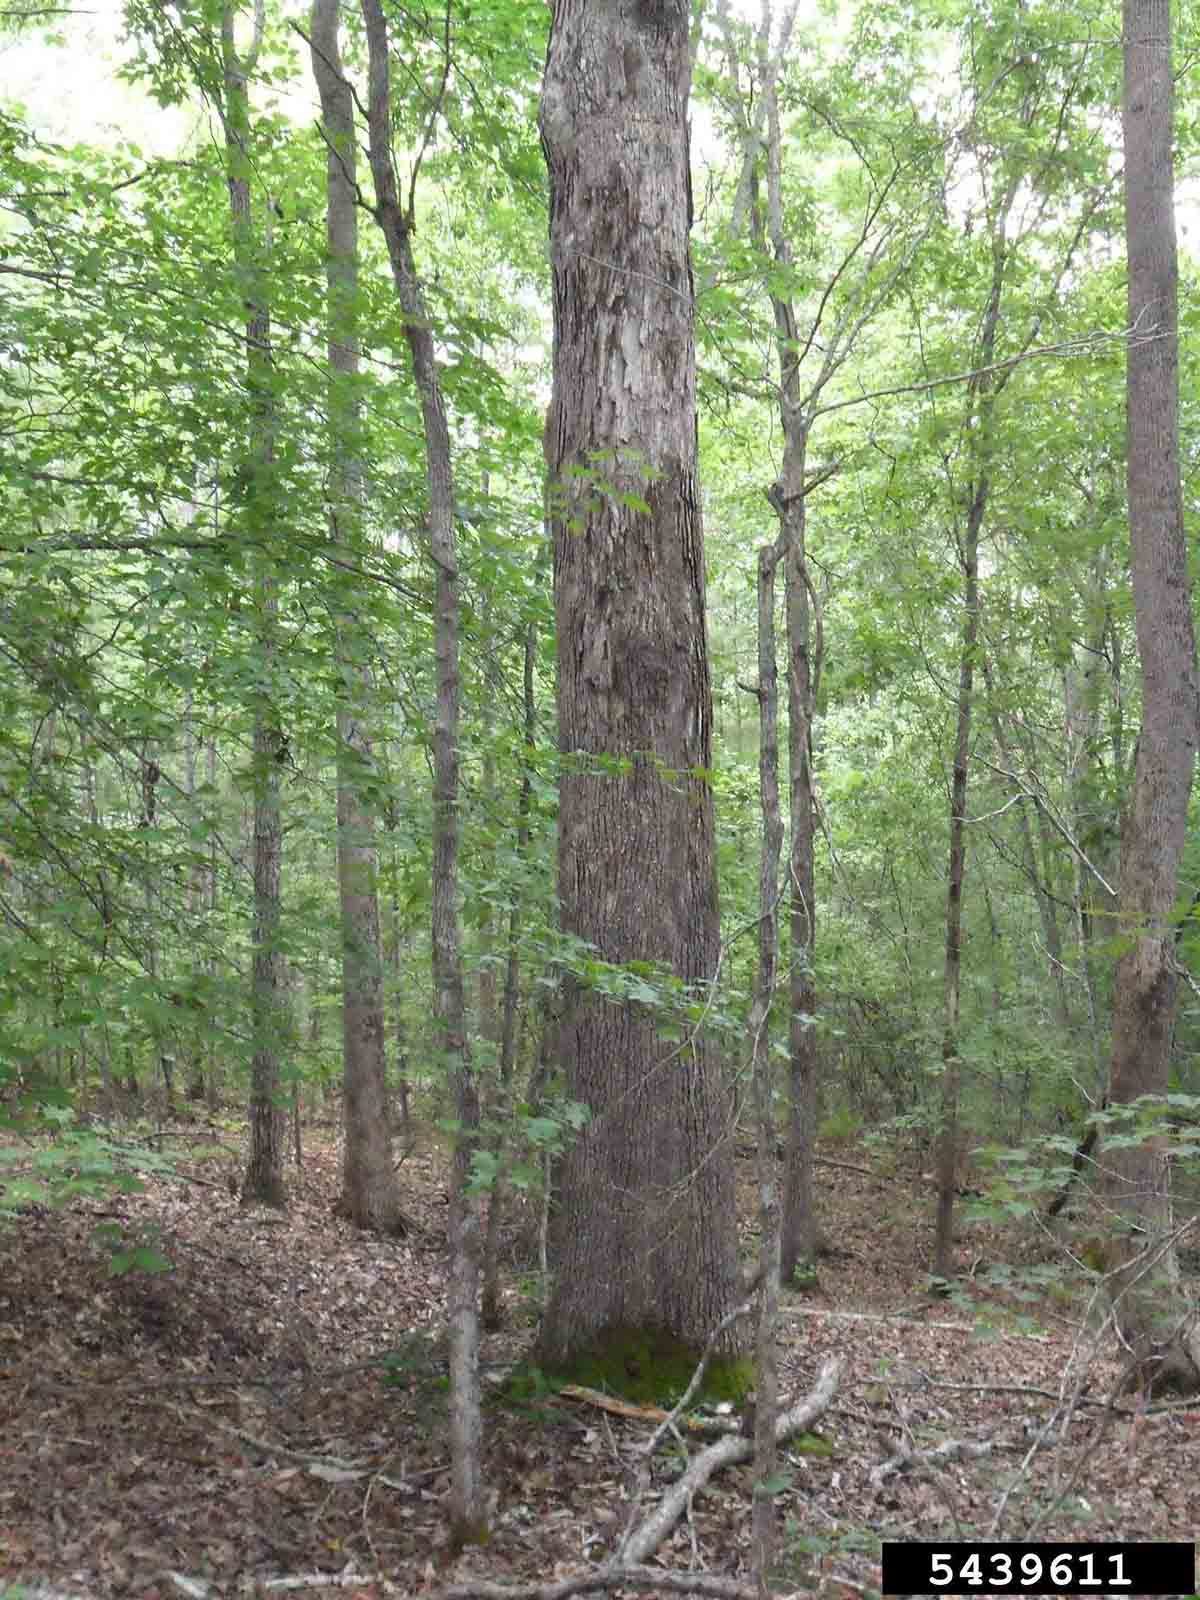 White oak tree in woods